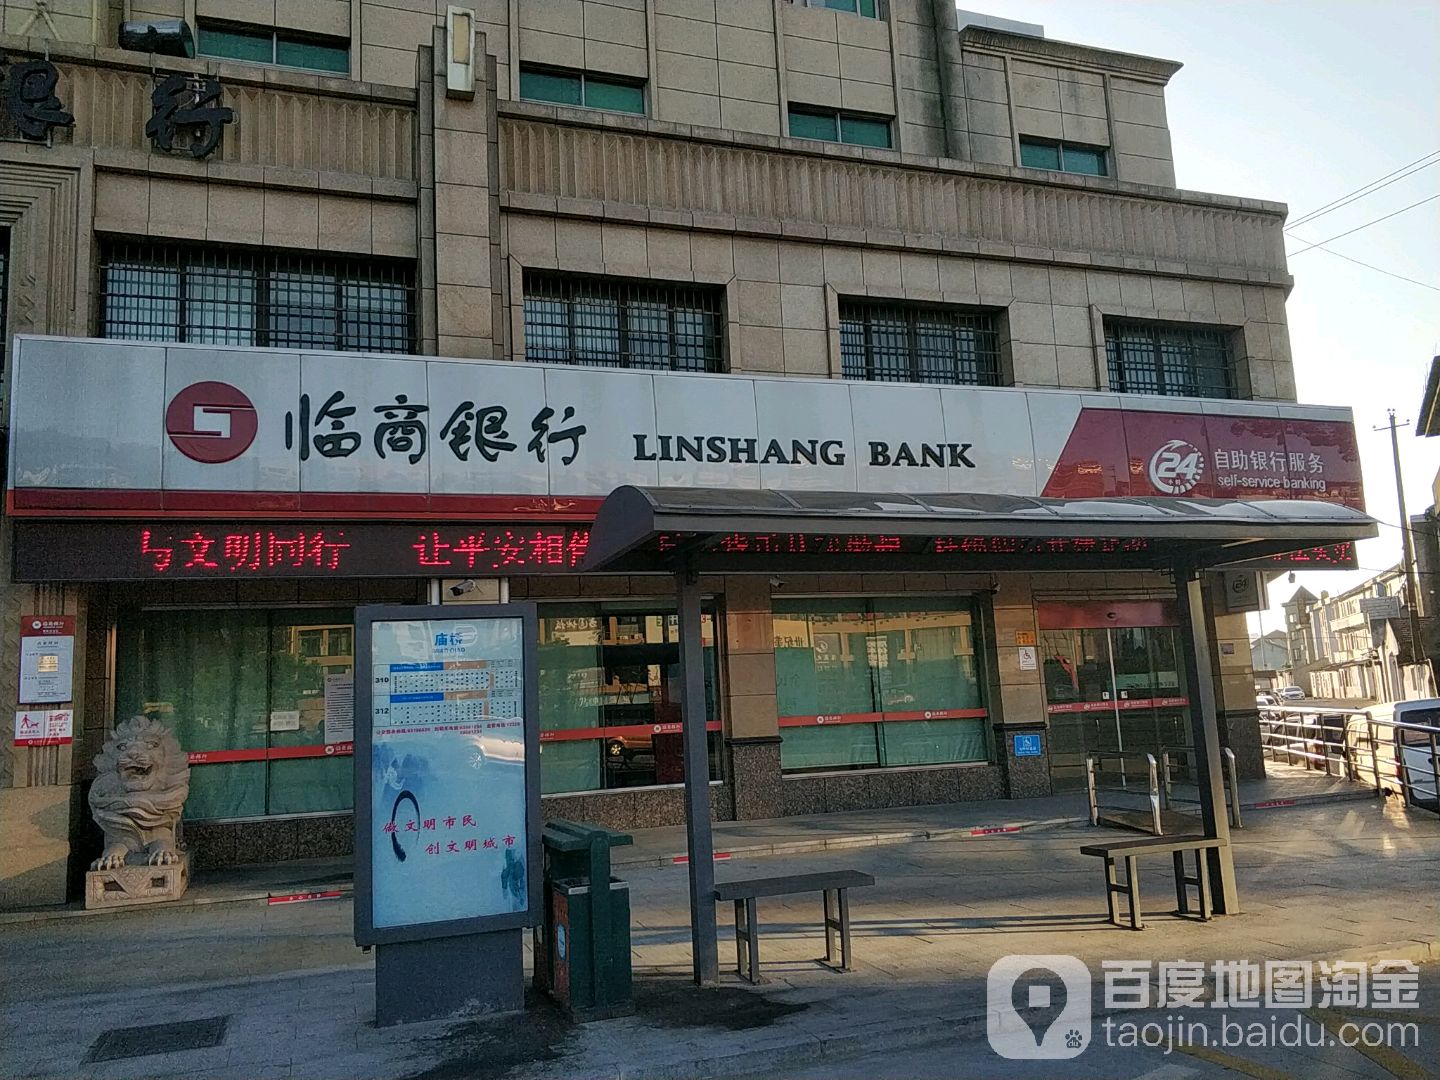 臨商銀行24小時自助銀行服務(觀海衛支行)